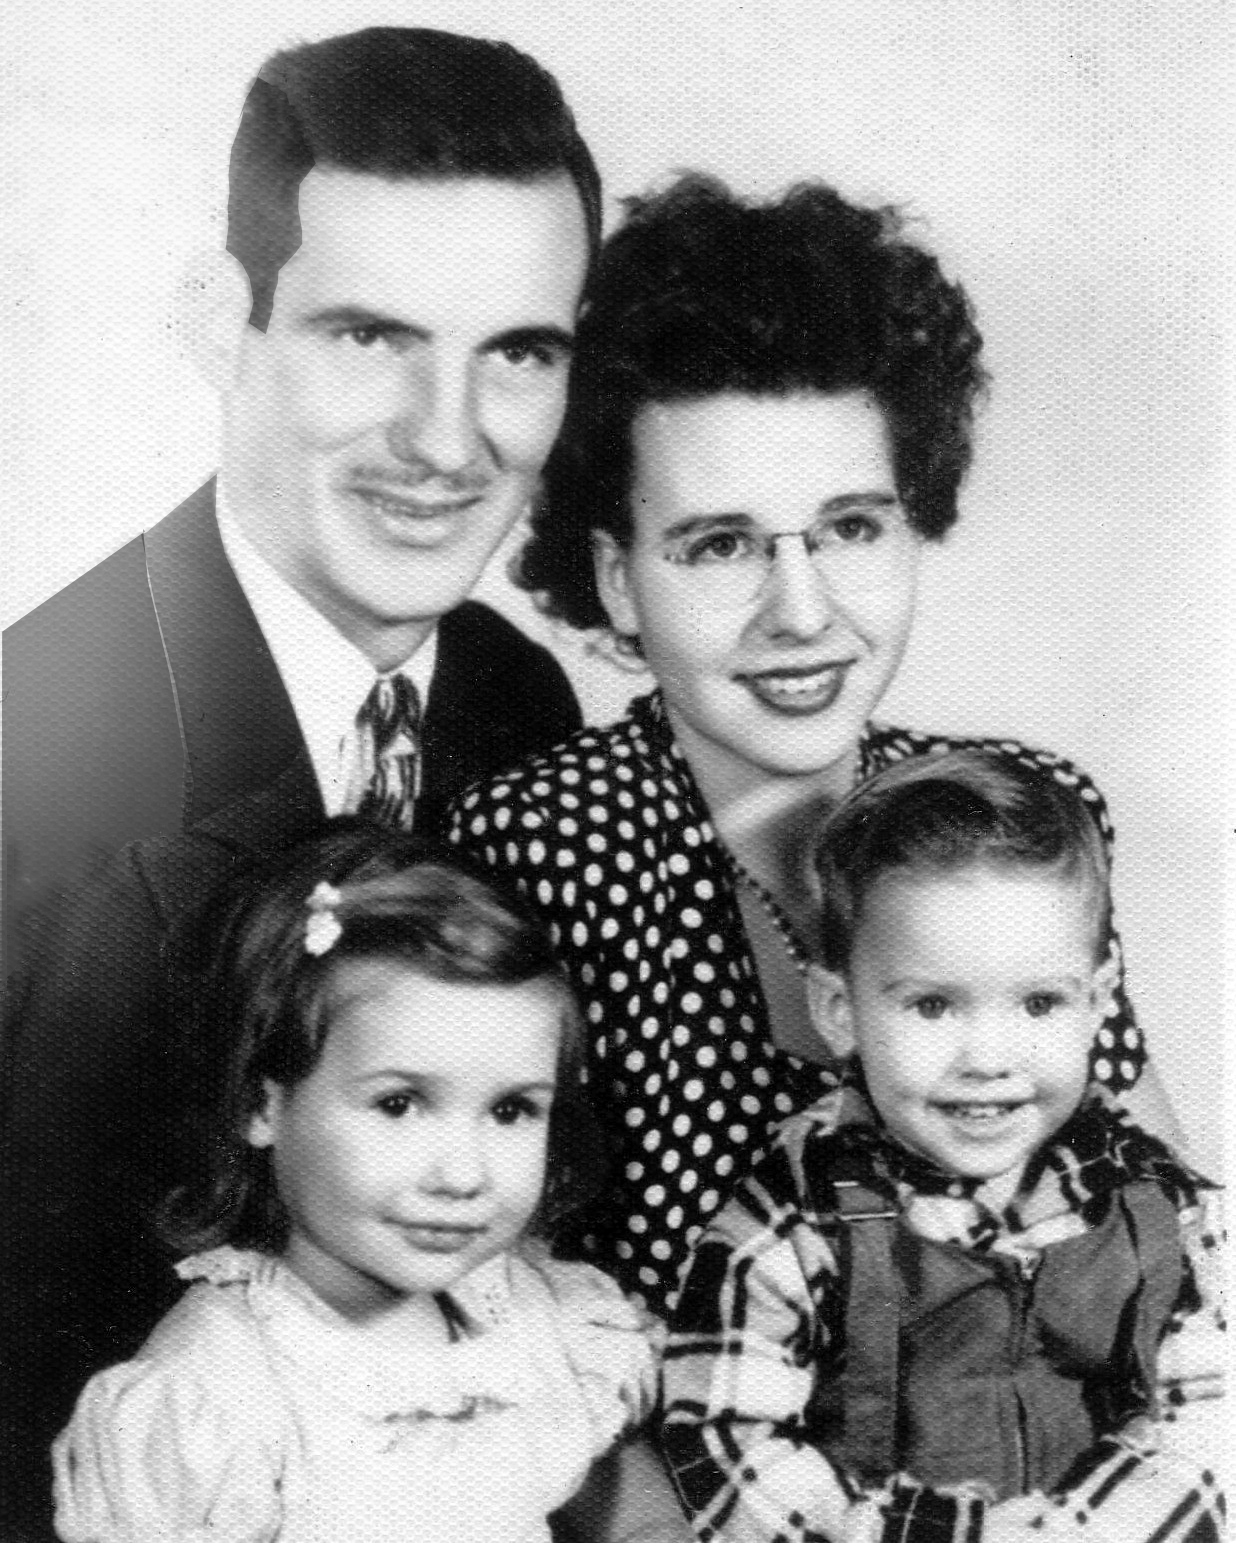 Tschopp Family Photo (circa 1951)